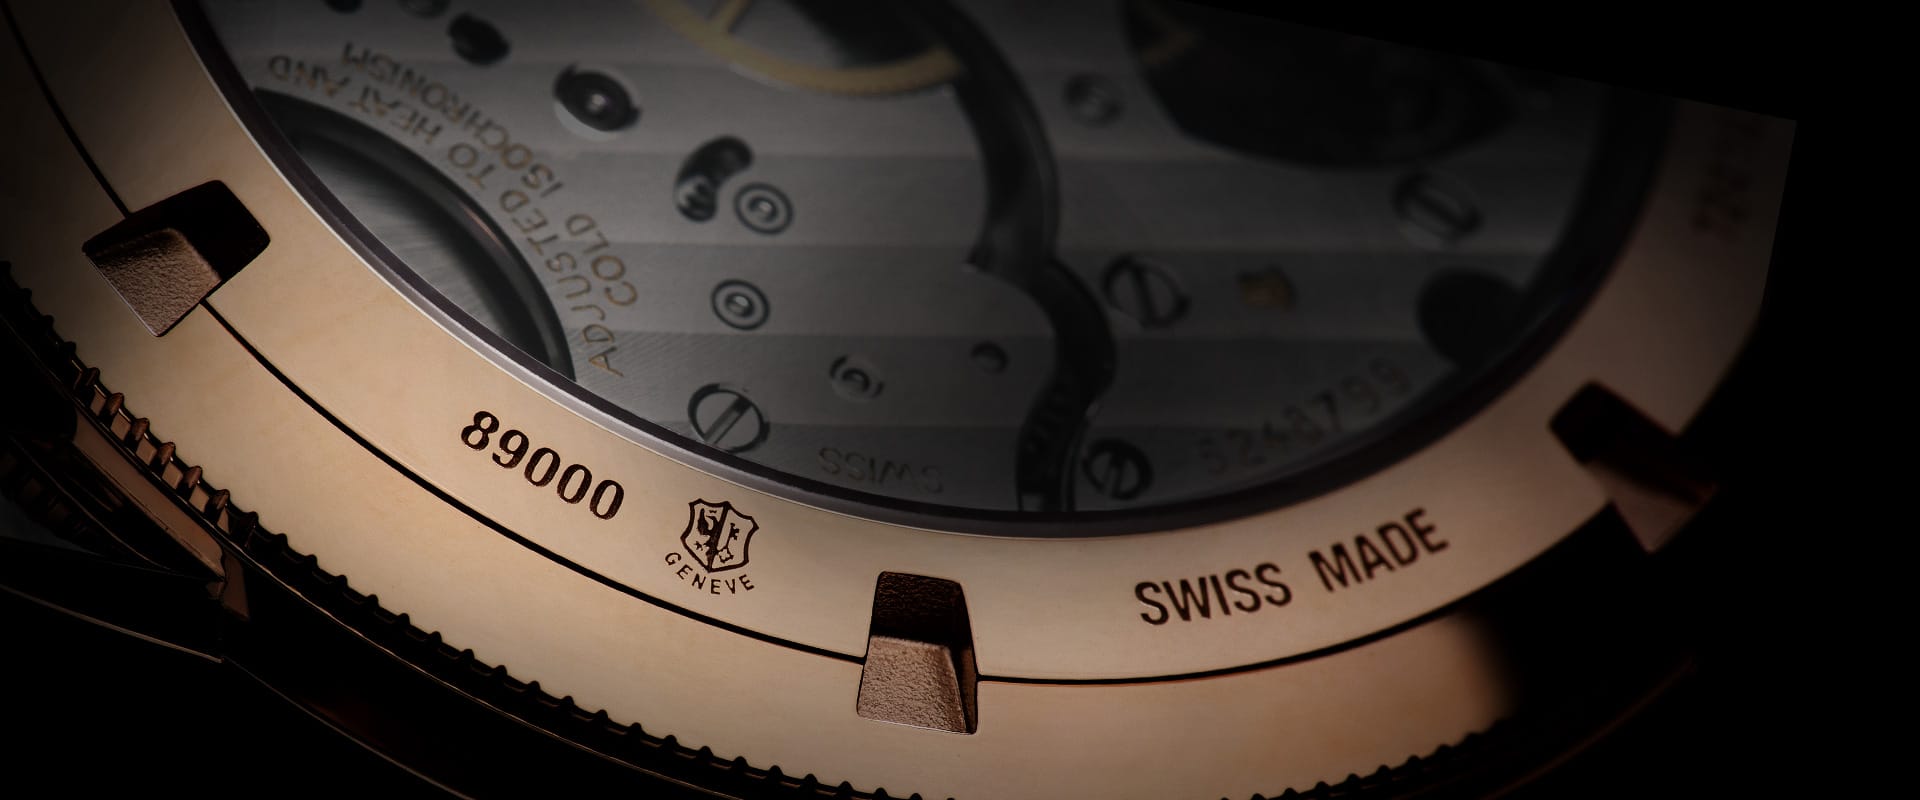 Das Genfer Siegel gibt es seit 1886. Es belegt, dass alle Uhrenteile im Schweizer Kanton Genf gefertigt wurden, wie bei den Uhren aus dem Hause Vacheron Constantin.